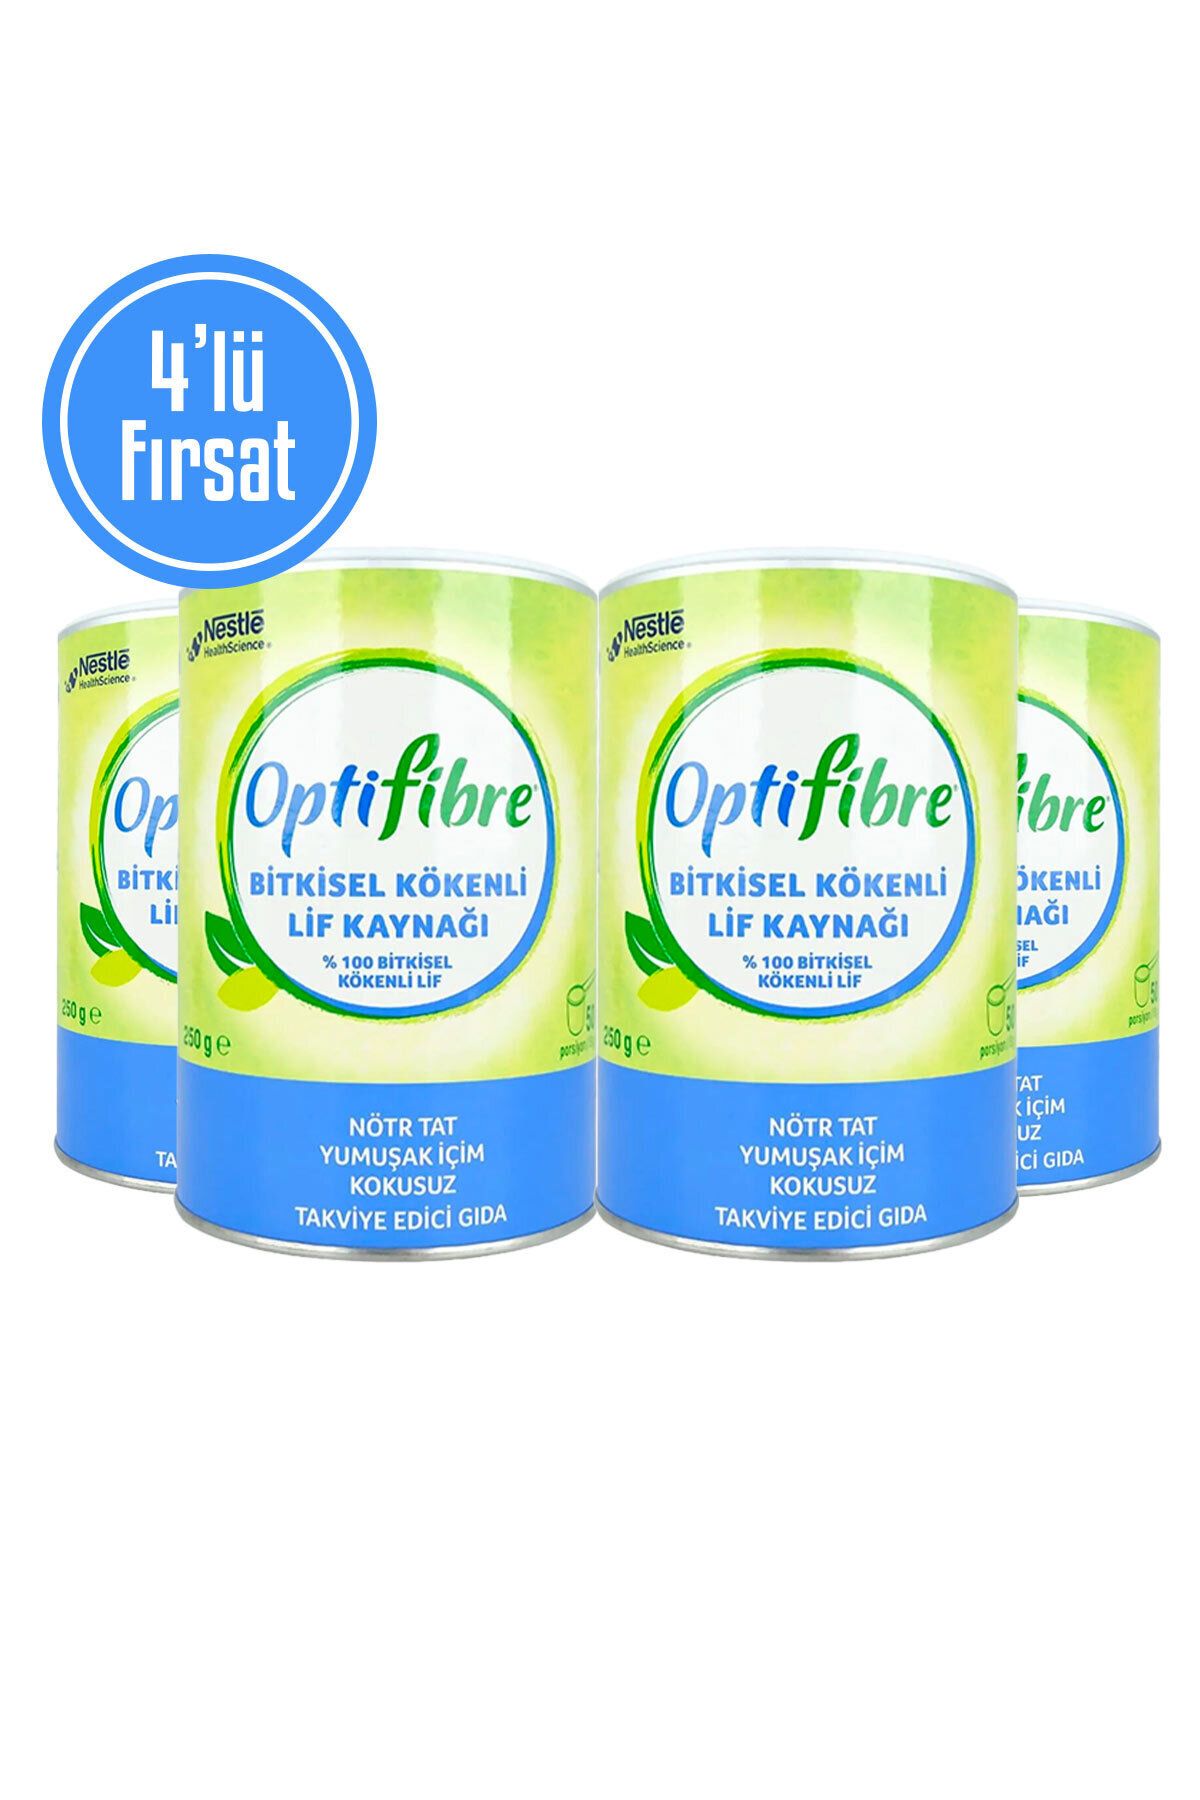 OptiFibre 4'lü Fırsat Bitkisel Kökenli Lif Kaynağı Takviye Edici Gıda 250 g